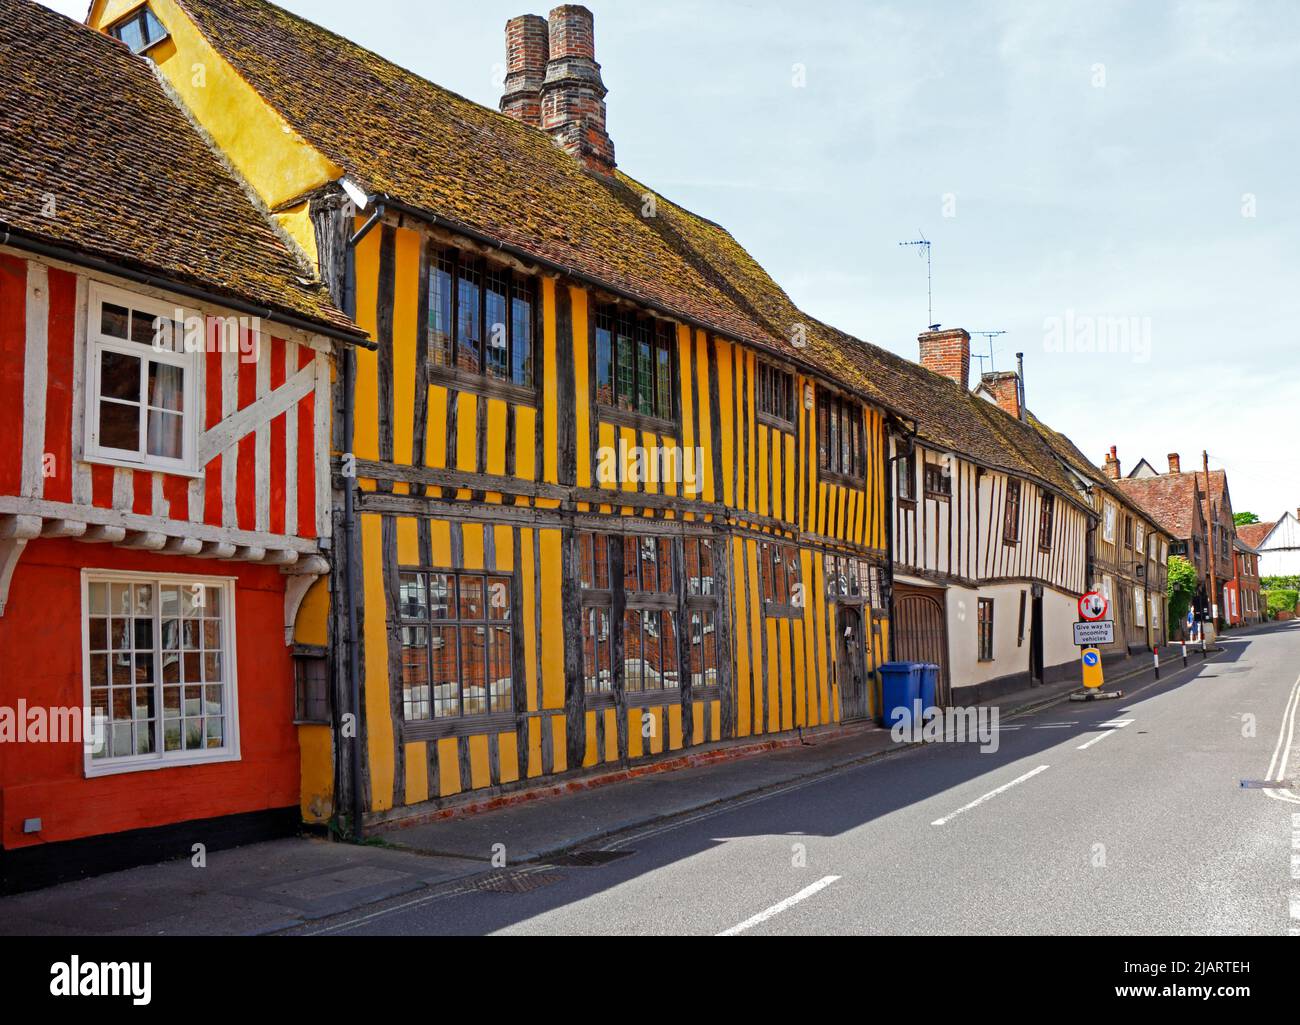 Una calle de coloridas casas medievales bien conservadas con entramado de madera en el pintoresco pueblo de Lavenham, Suffolk, Inglaterra, Reino Unido. Foto de stock